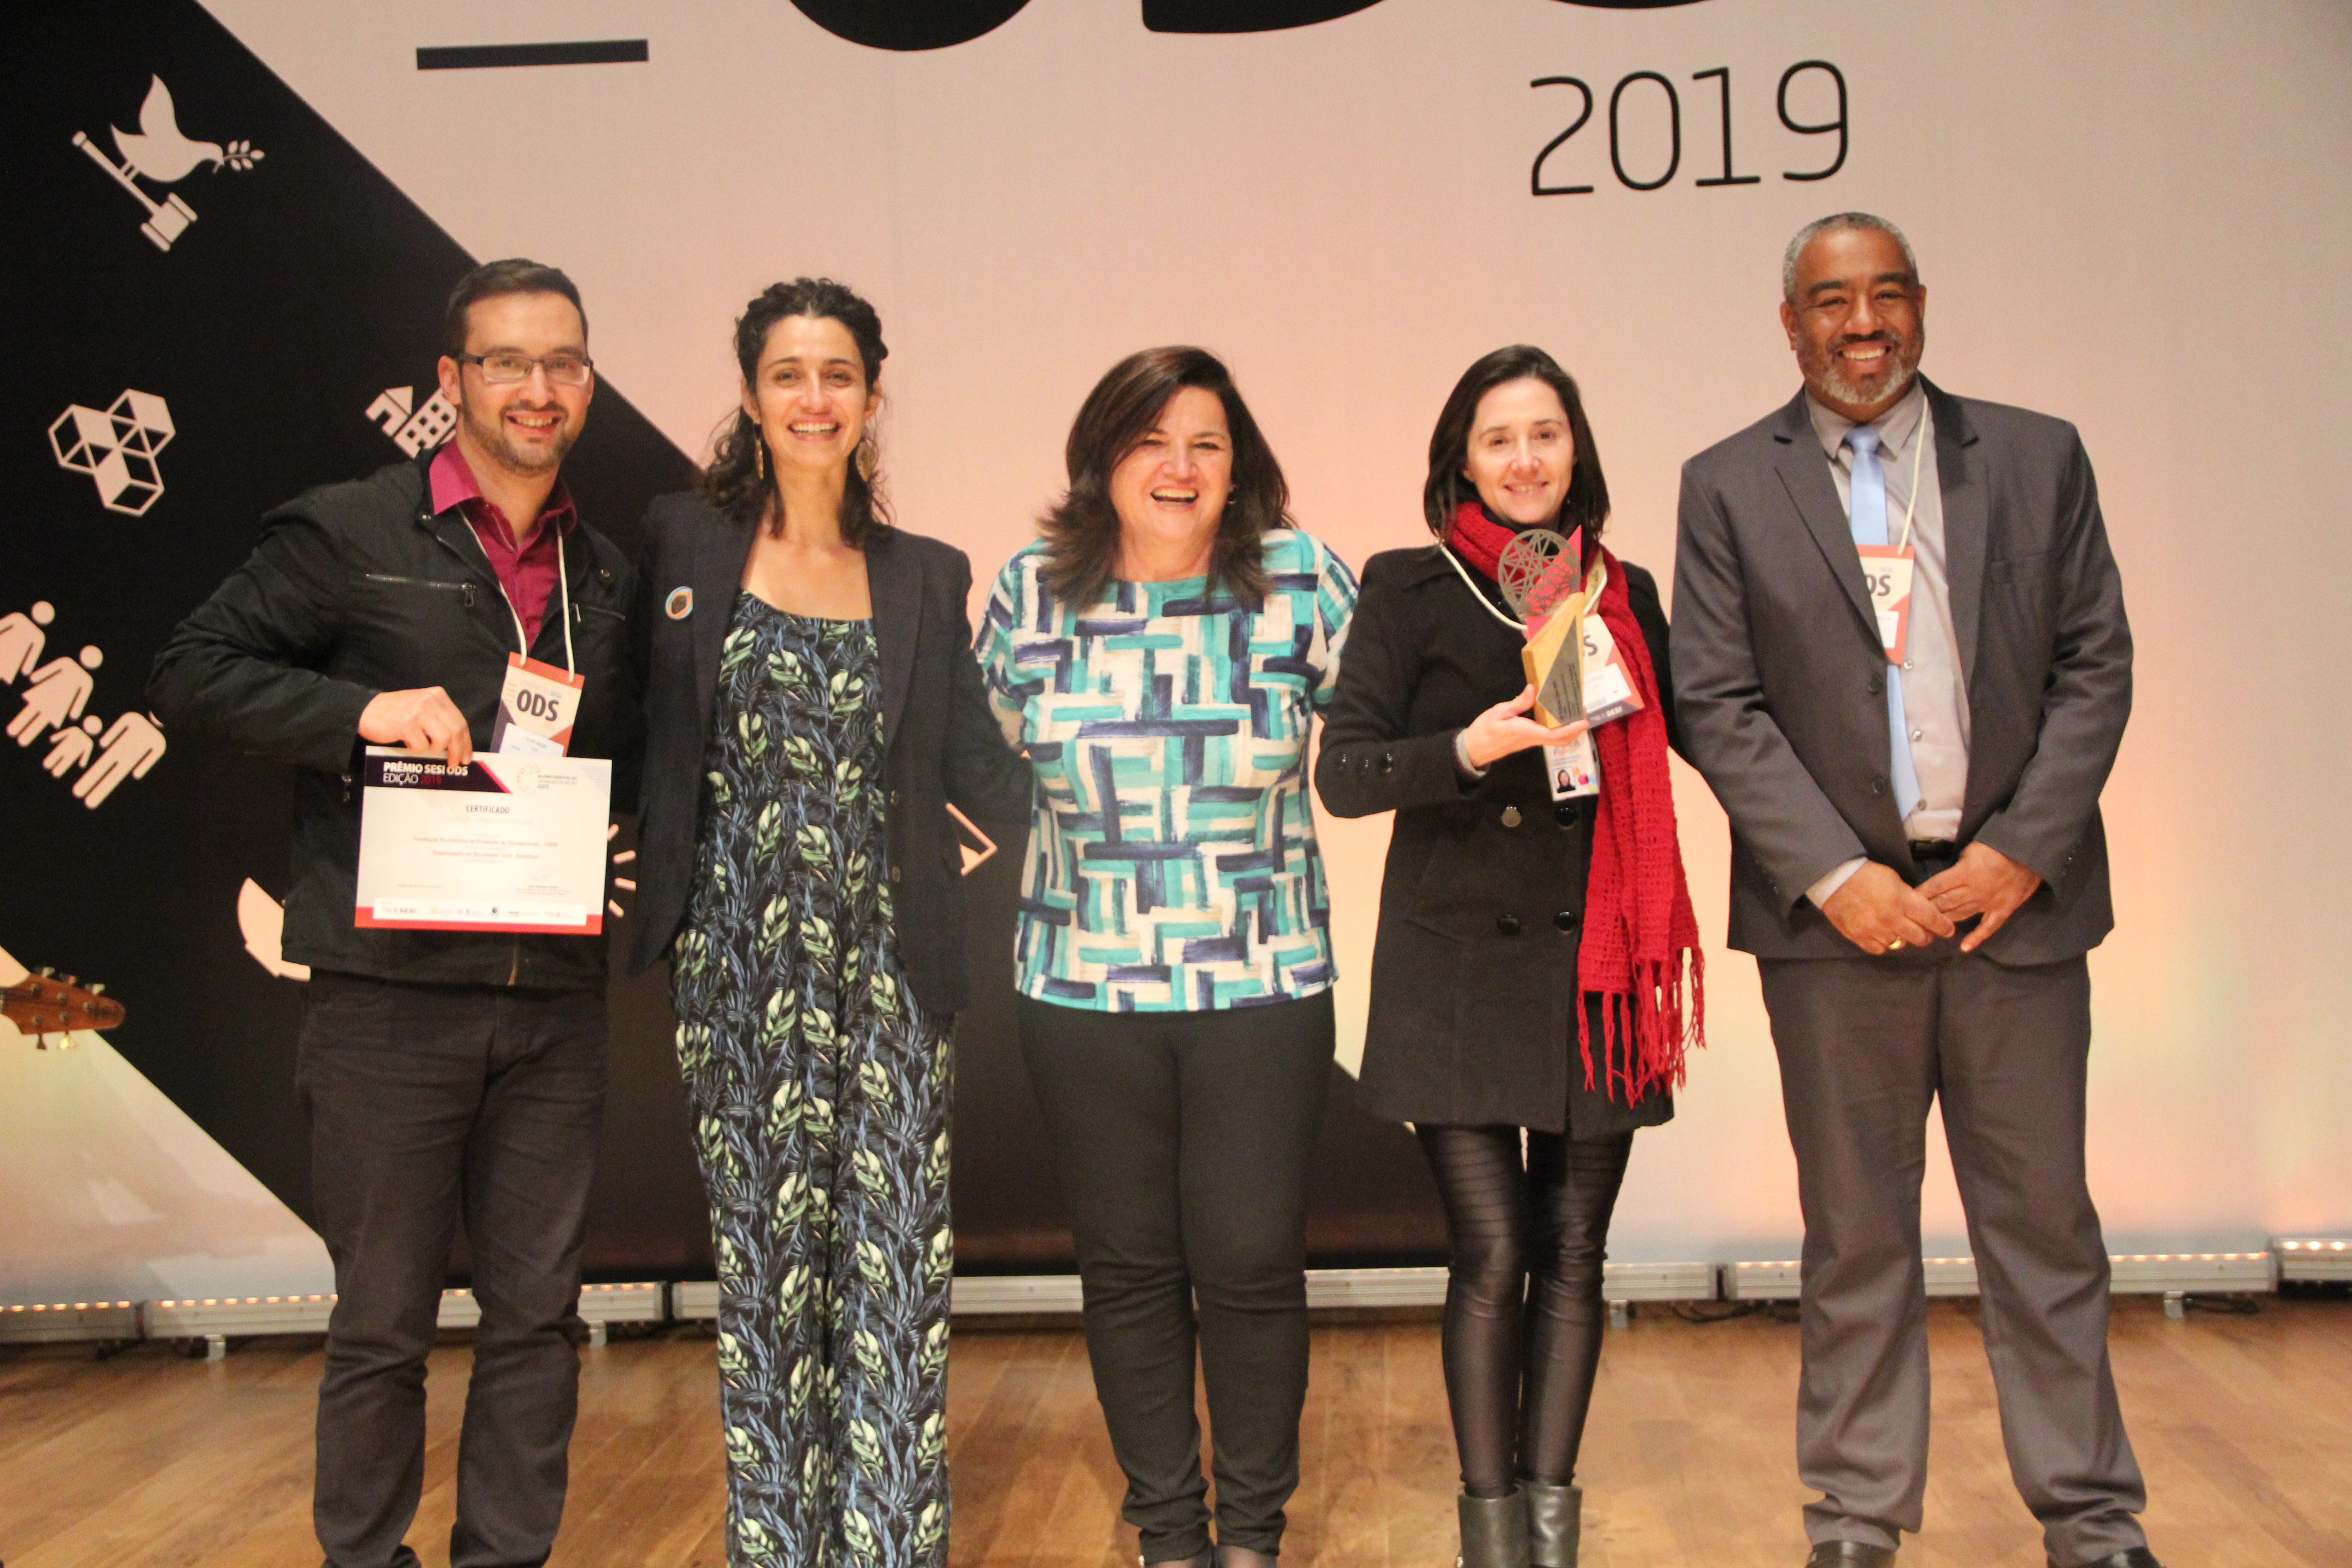 Momento da entrega do prêmio SESI ODS - 2019